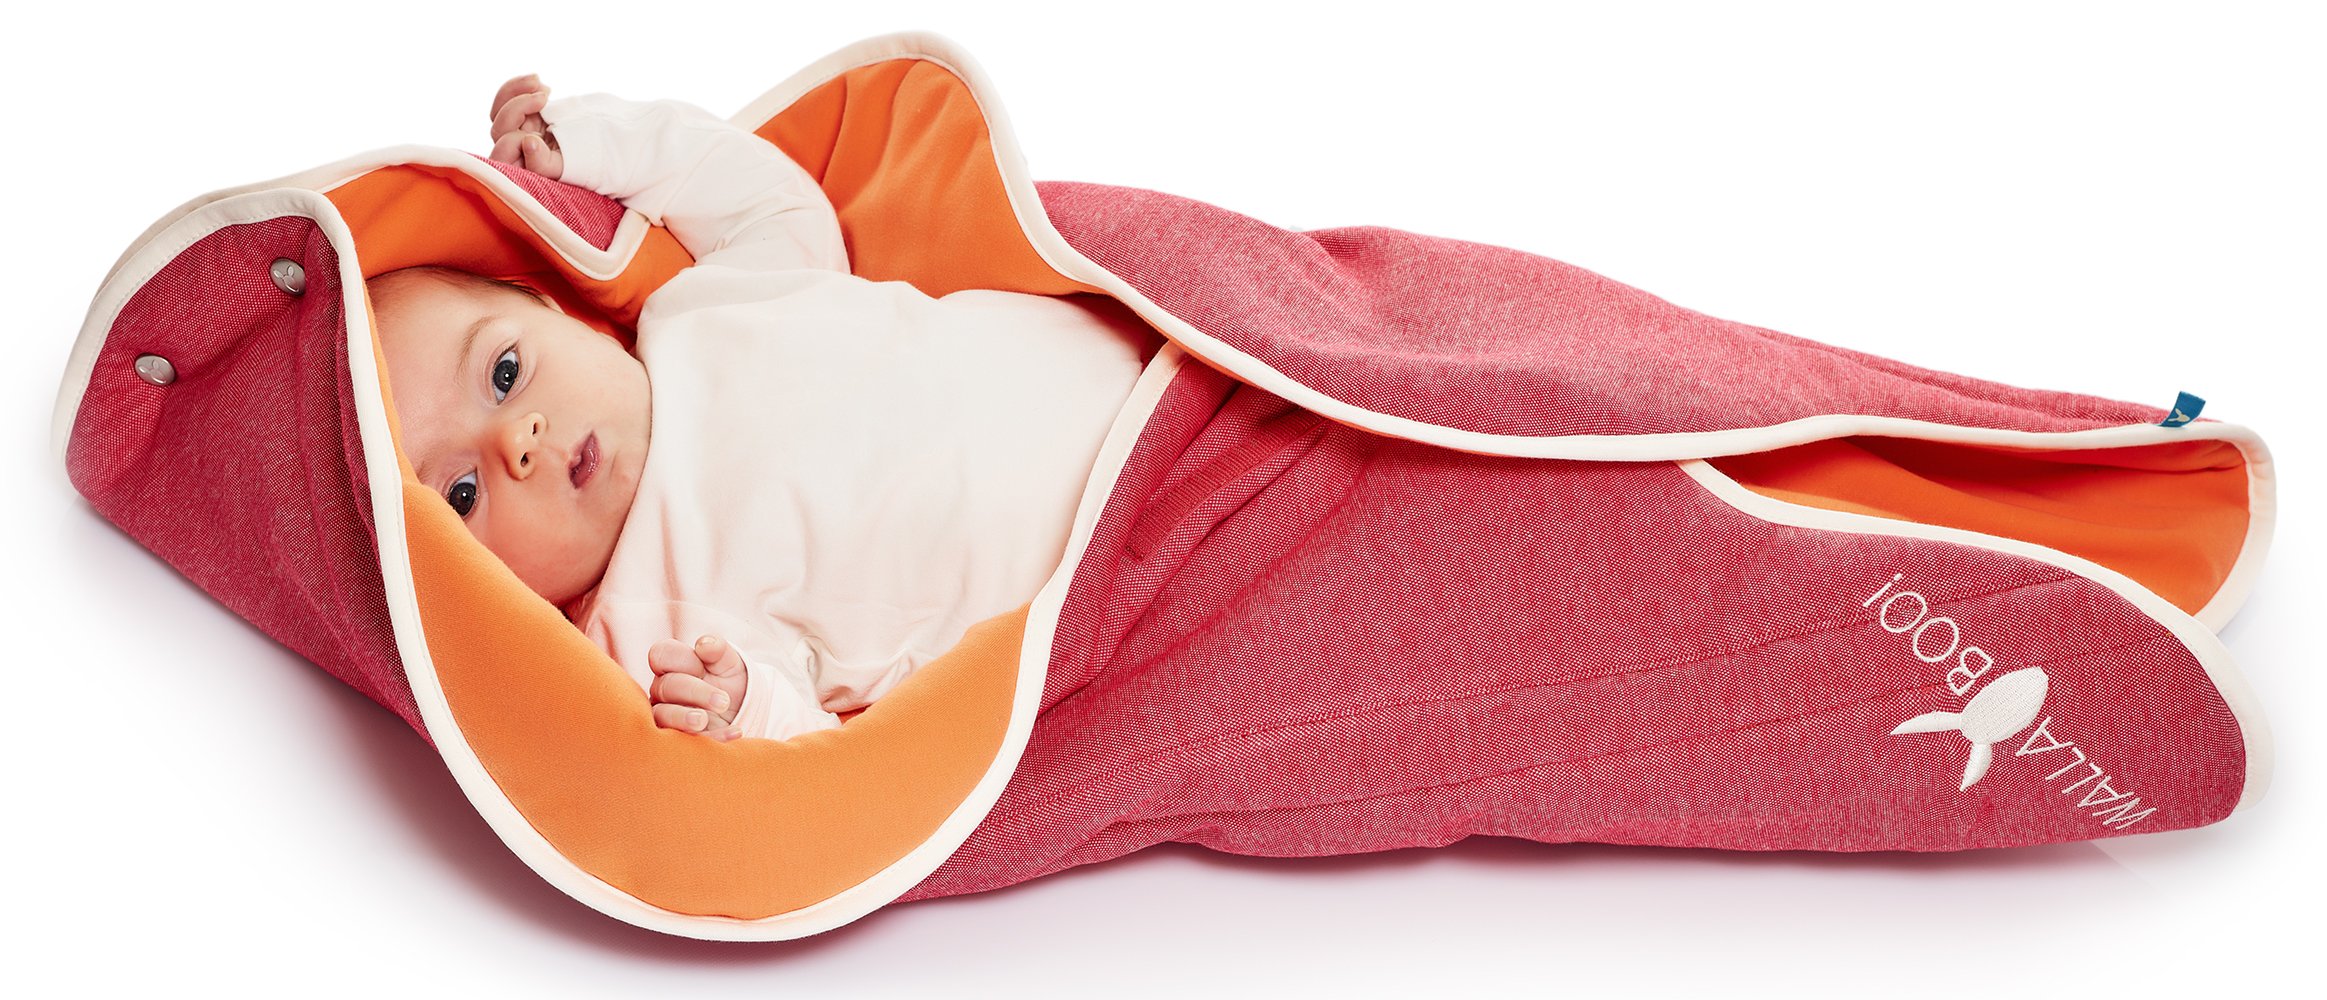 Wallaboo Einschlagdecke Fleur für Babyschale, Autokindersitz, für Kinderwagen, Suße Blumenform, 100% Baumwolle, 85 x 85 cm, 0 - 12 Monaten, Farbe: Rot - Orange